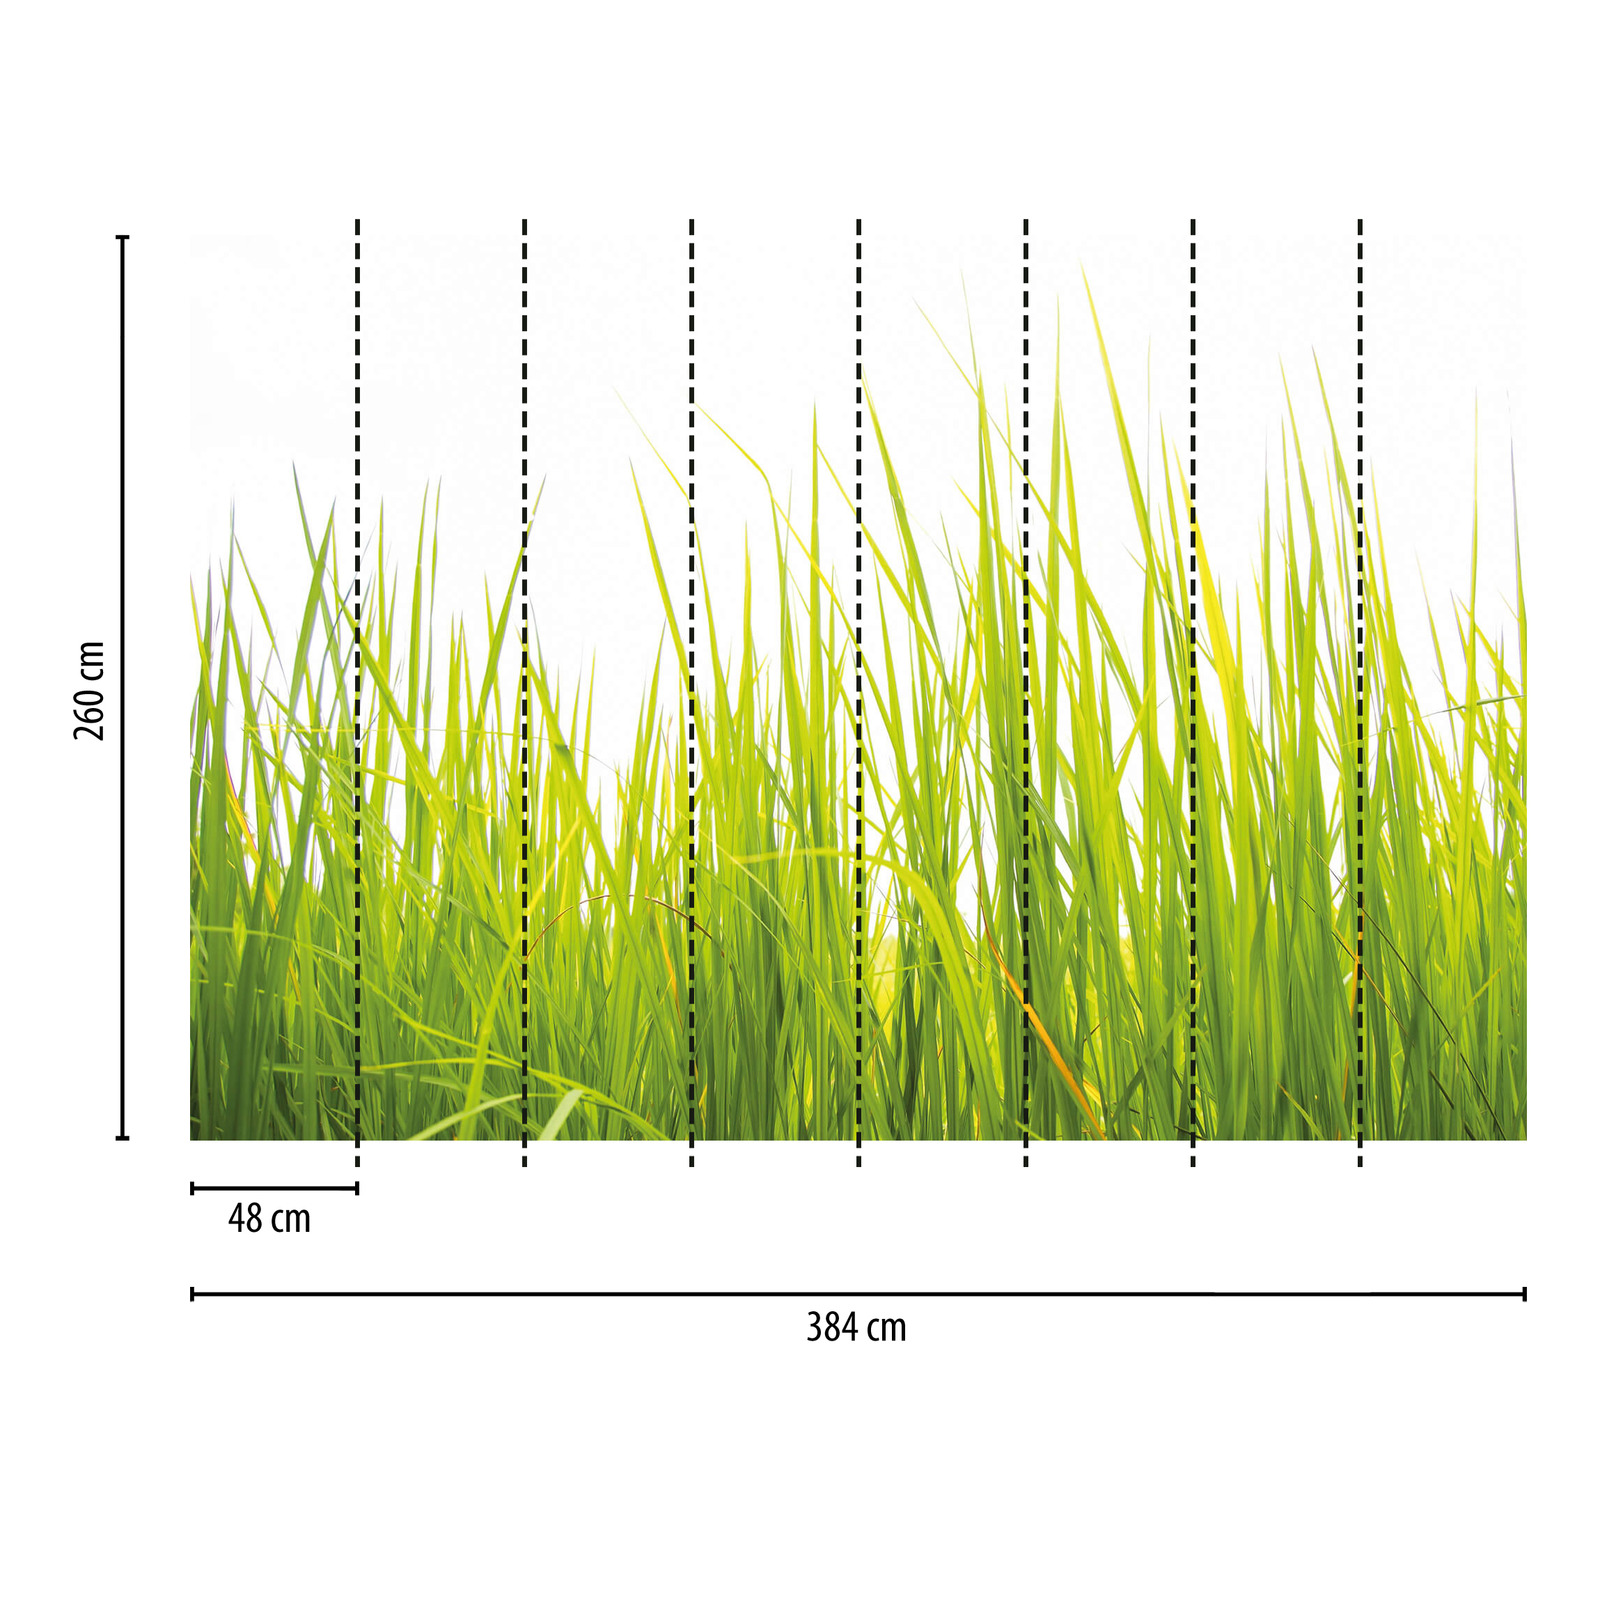             Tall Grass in the Wind Behang - Groen
        